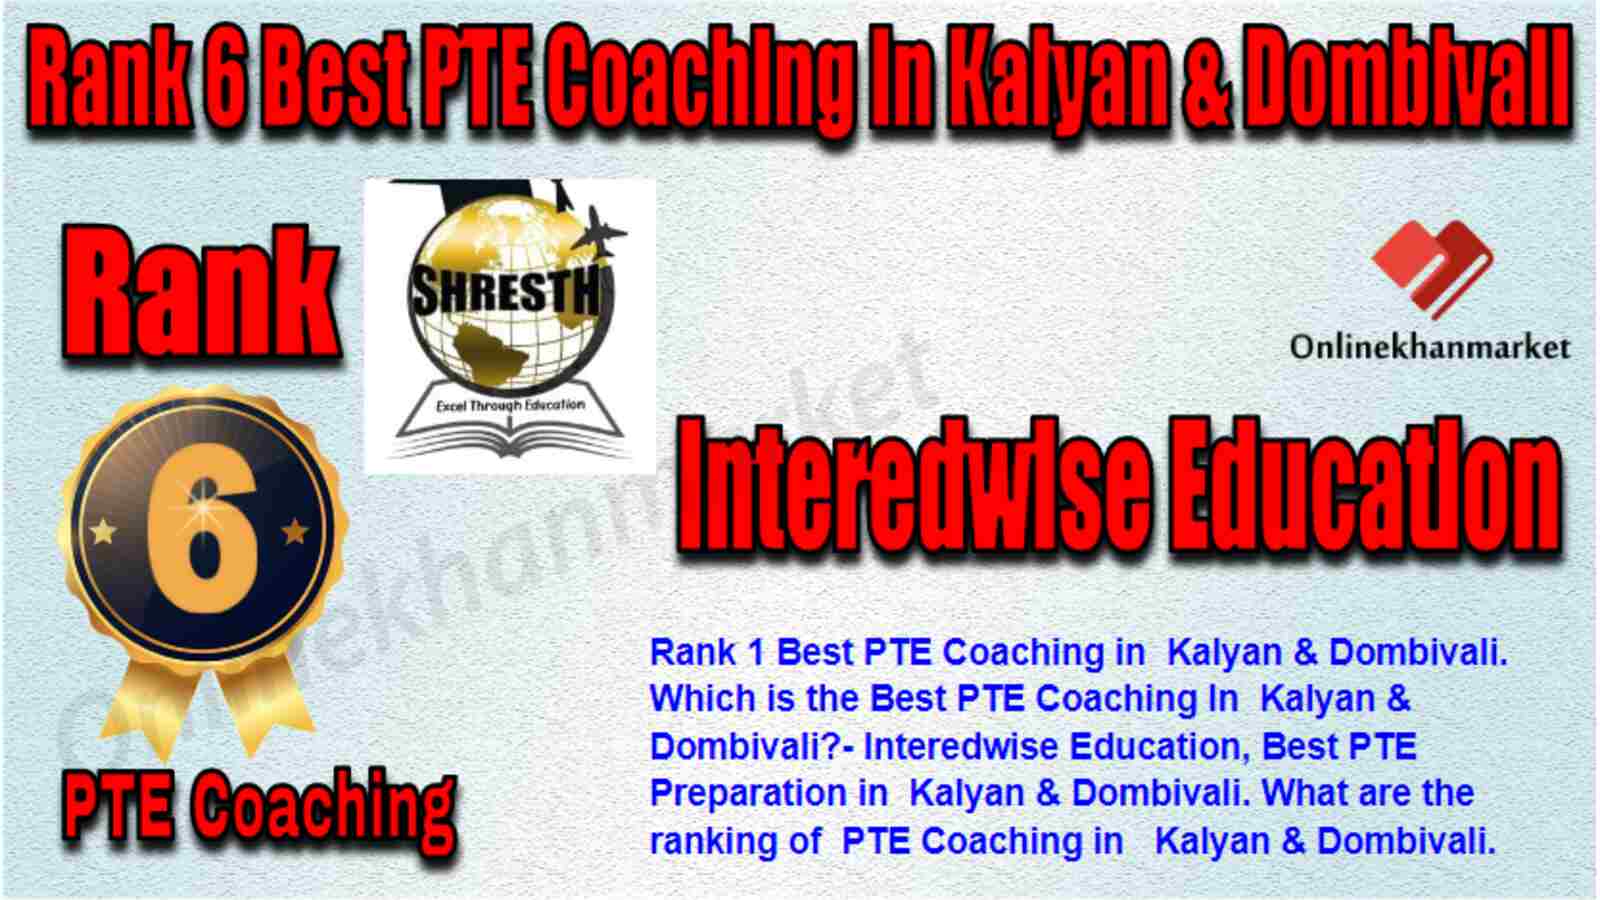 Rank 6 Best PTE Coaching in Kalyan & Dombivali